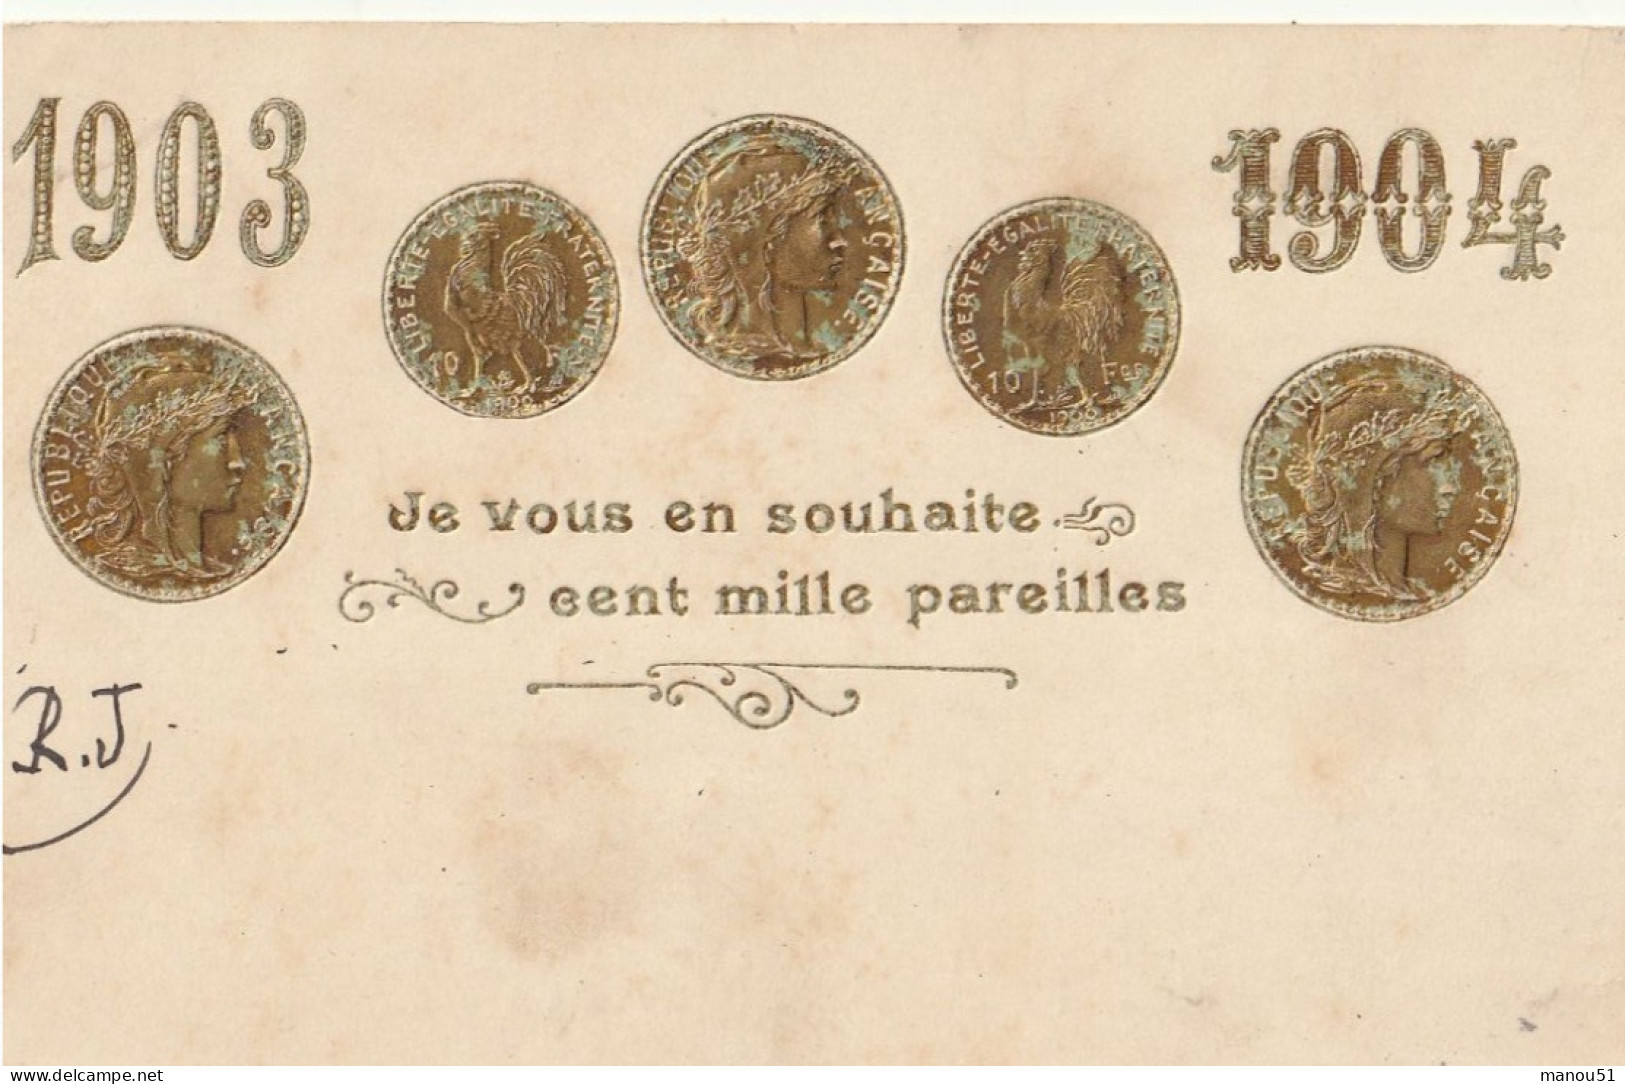 Monnaie - Pièces - Bonne Année - 1904 - CPA Gaufrée - Monnaies (représentations)